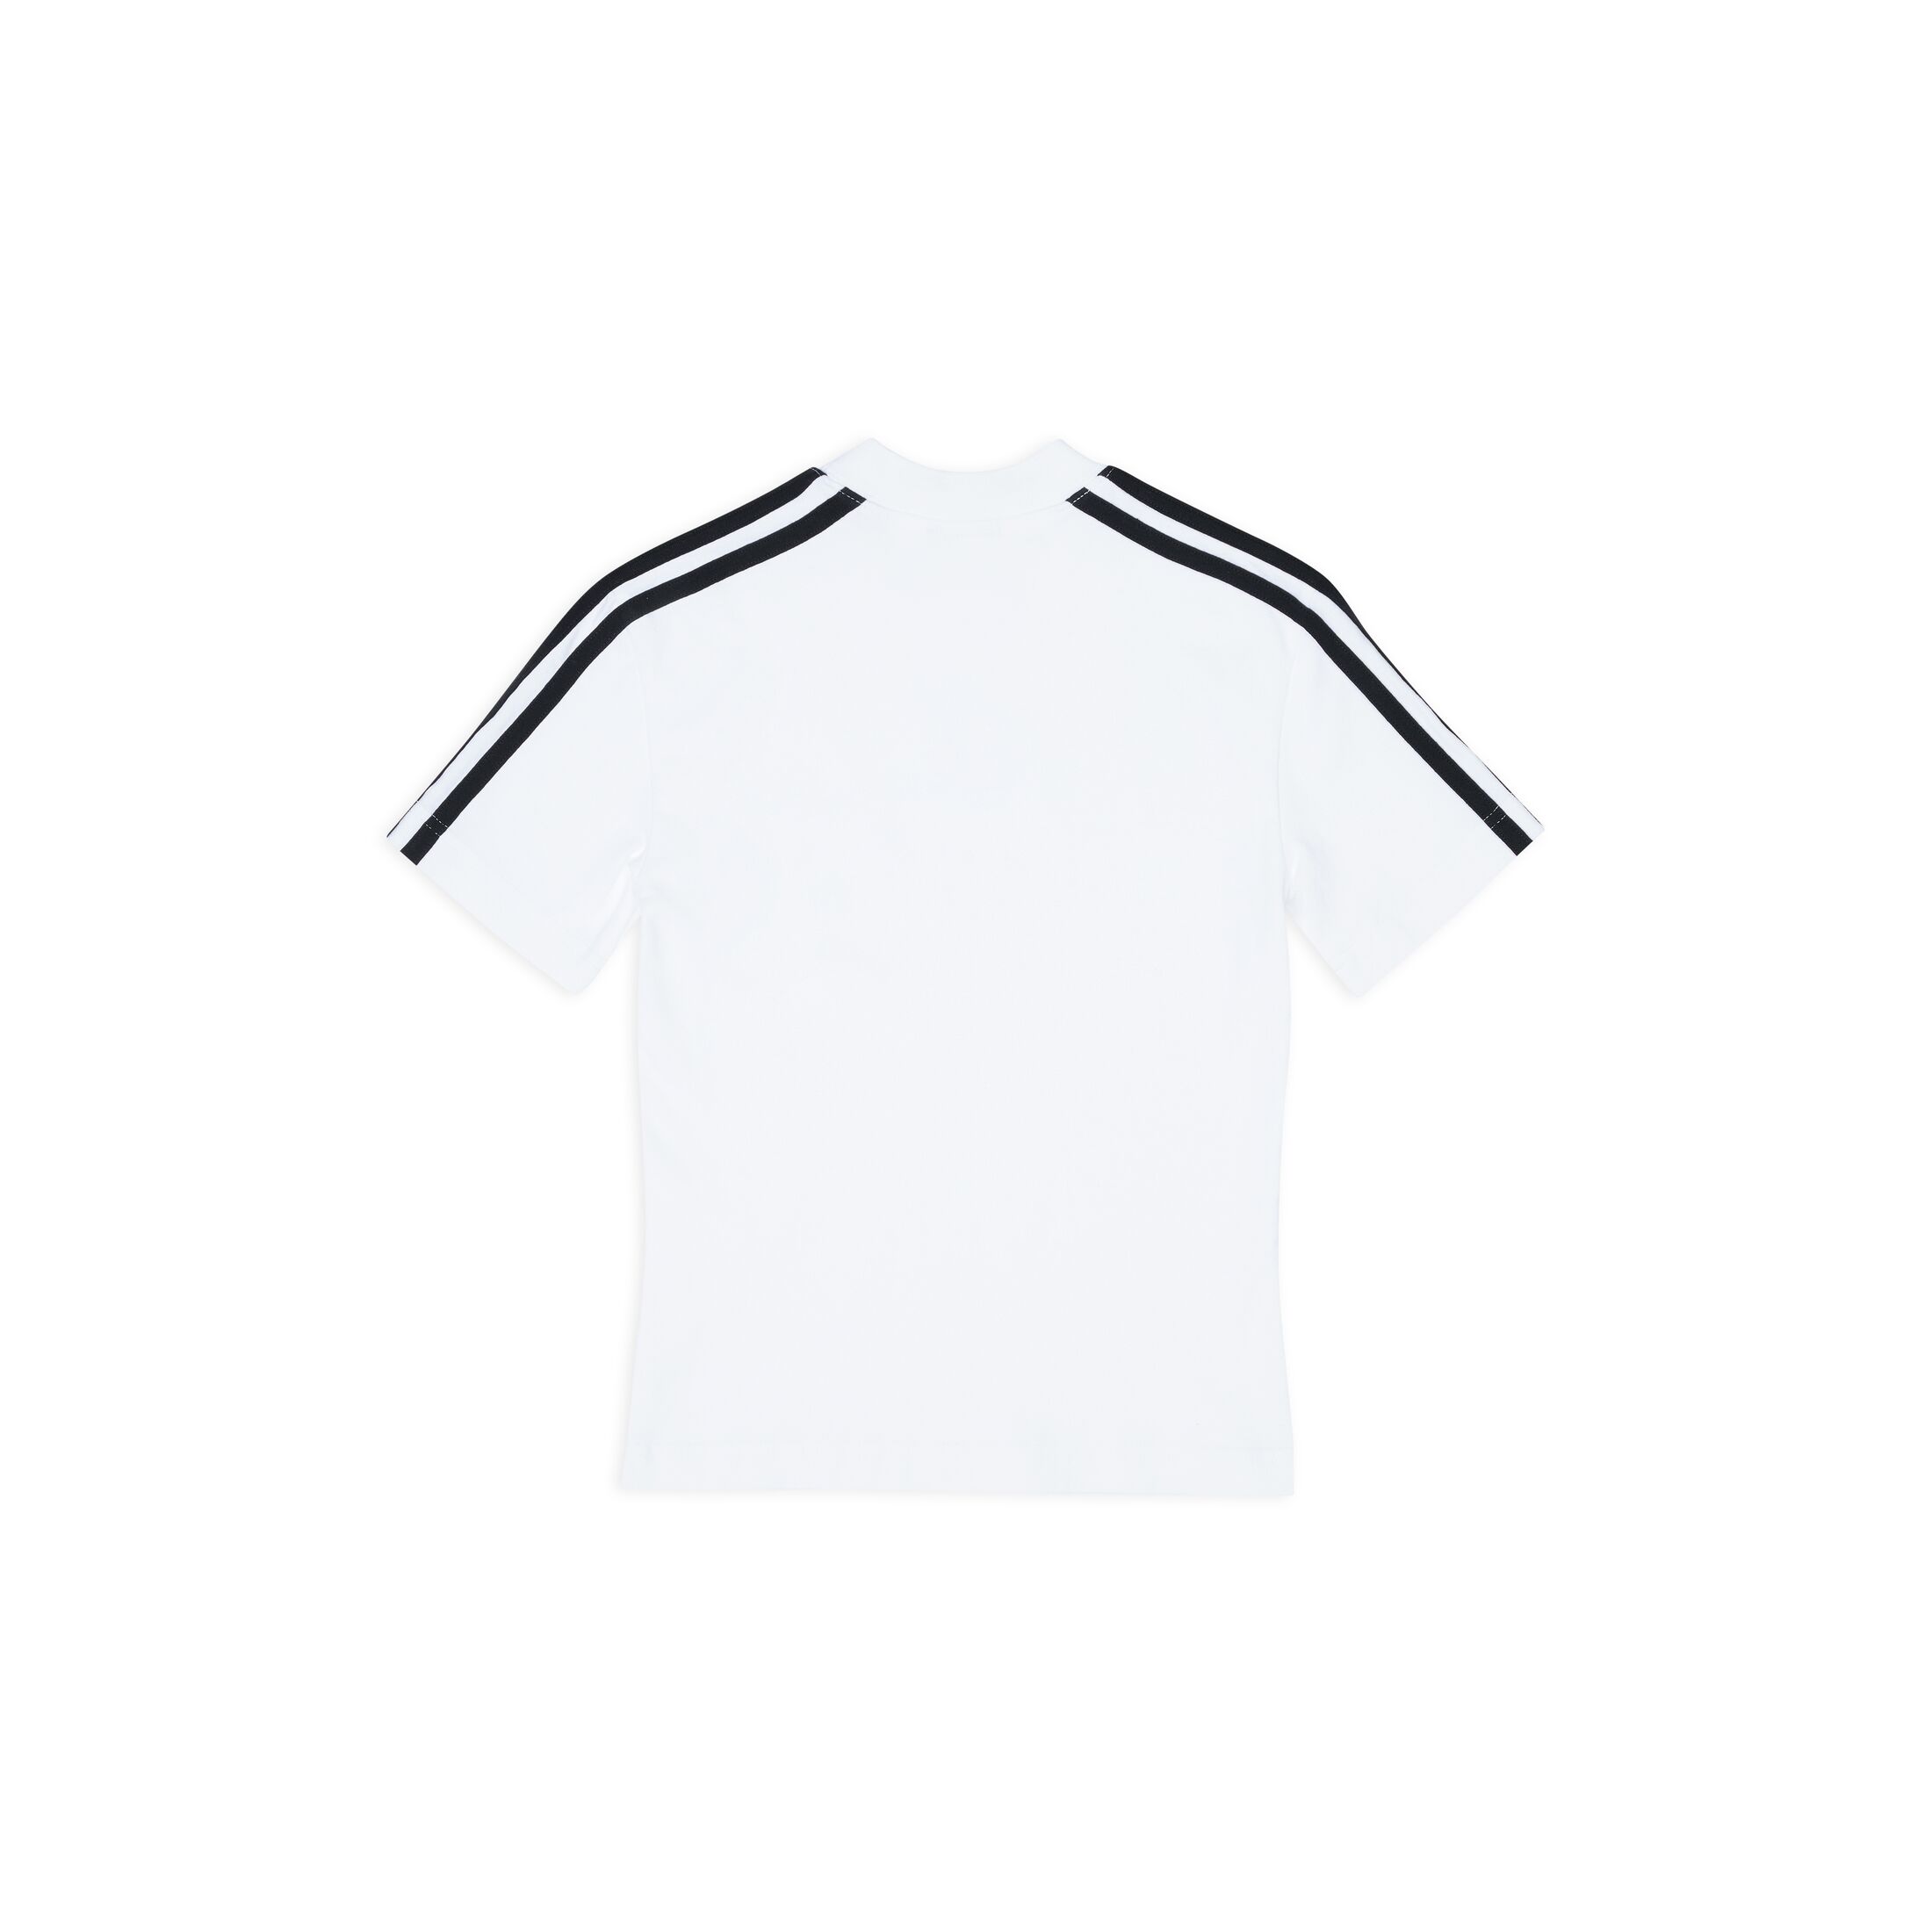 Balenciaga x adidas Shrunk T-Shirt White - FW22 - US